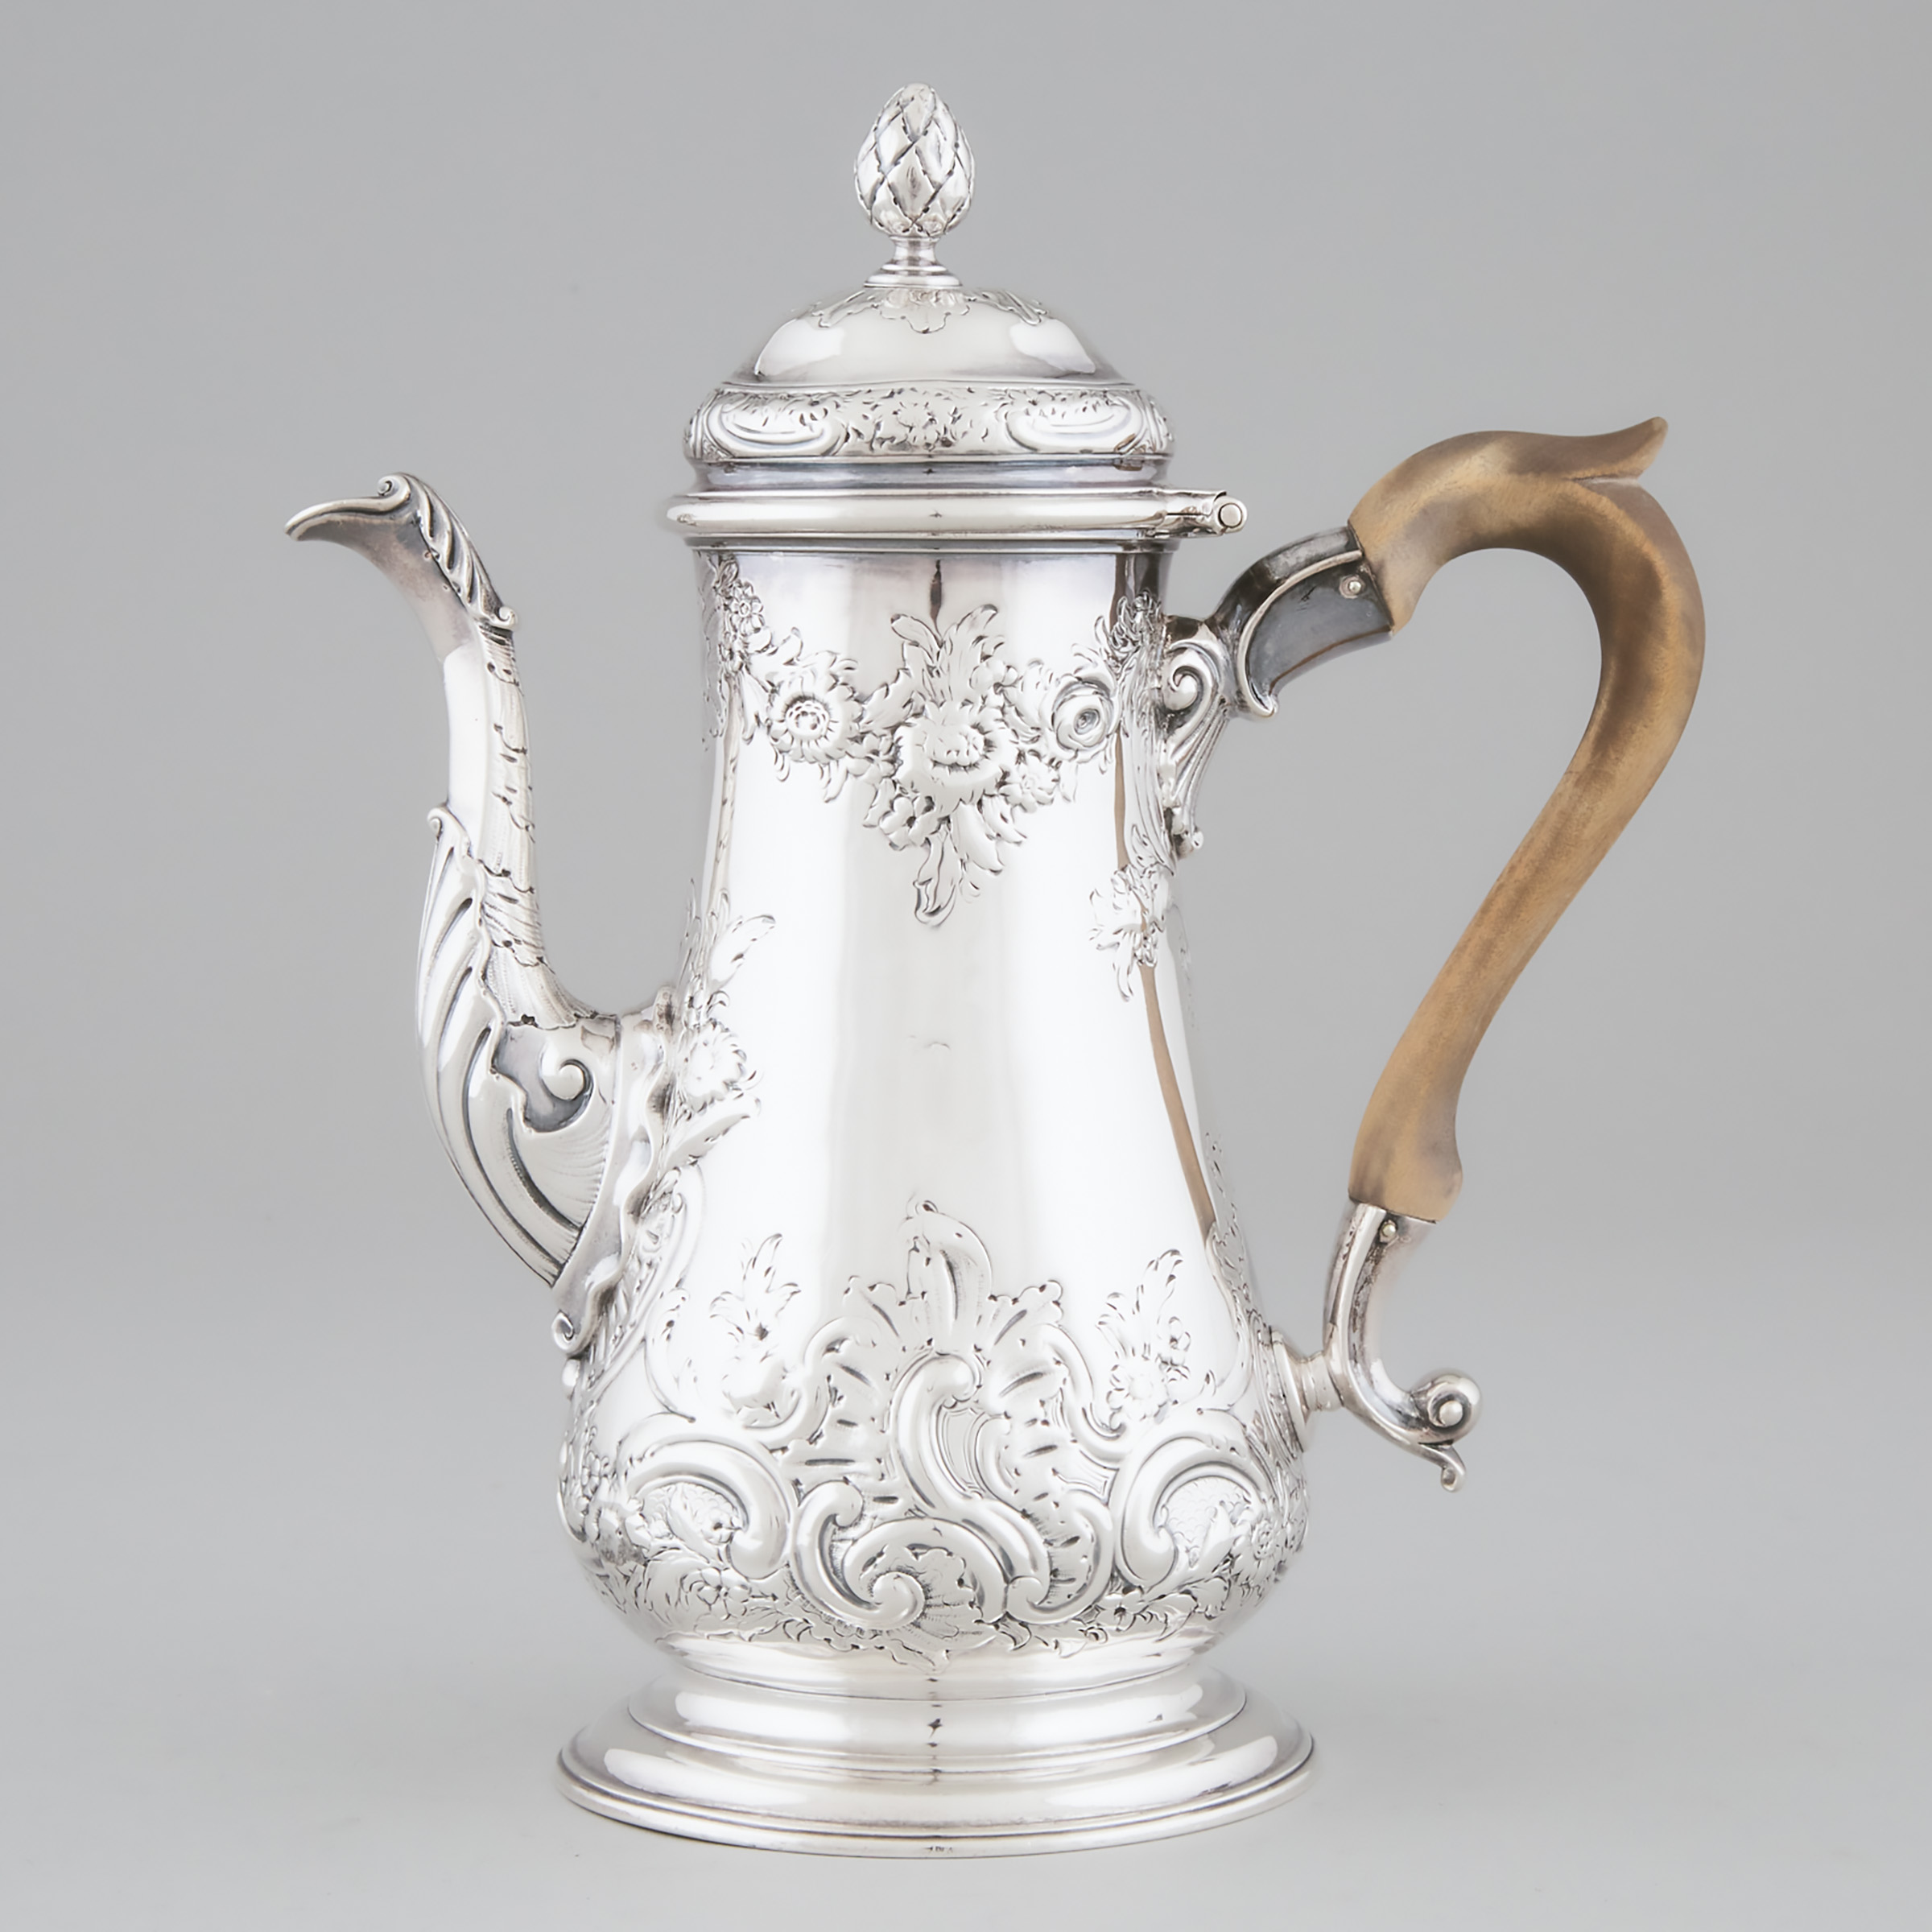 George II Silver Coffee Pot, Jacob Marsh, London, 1753